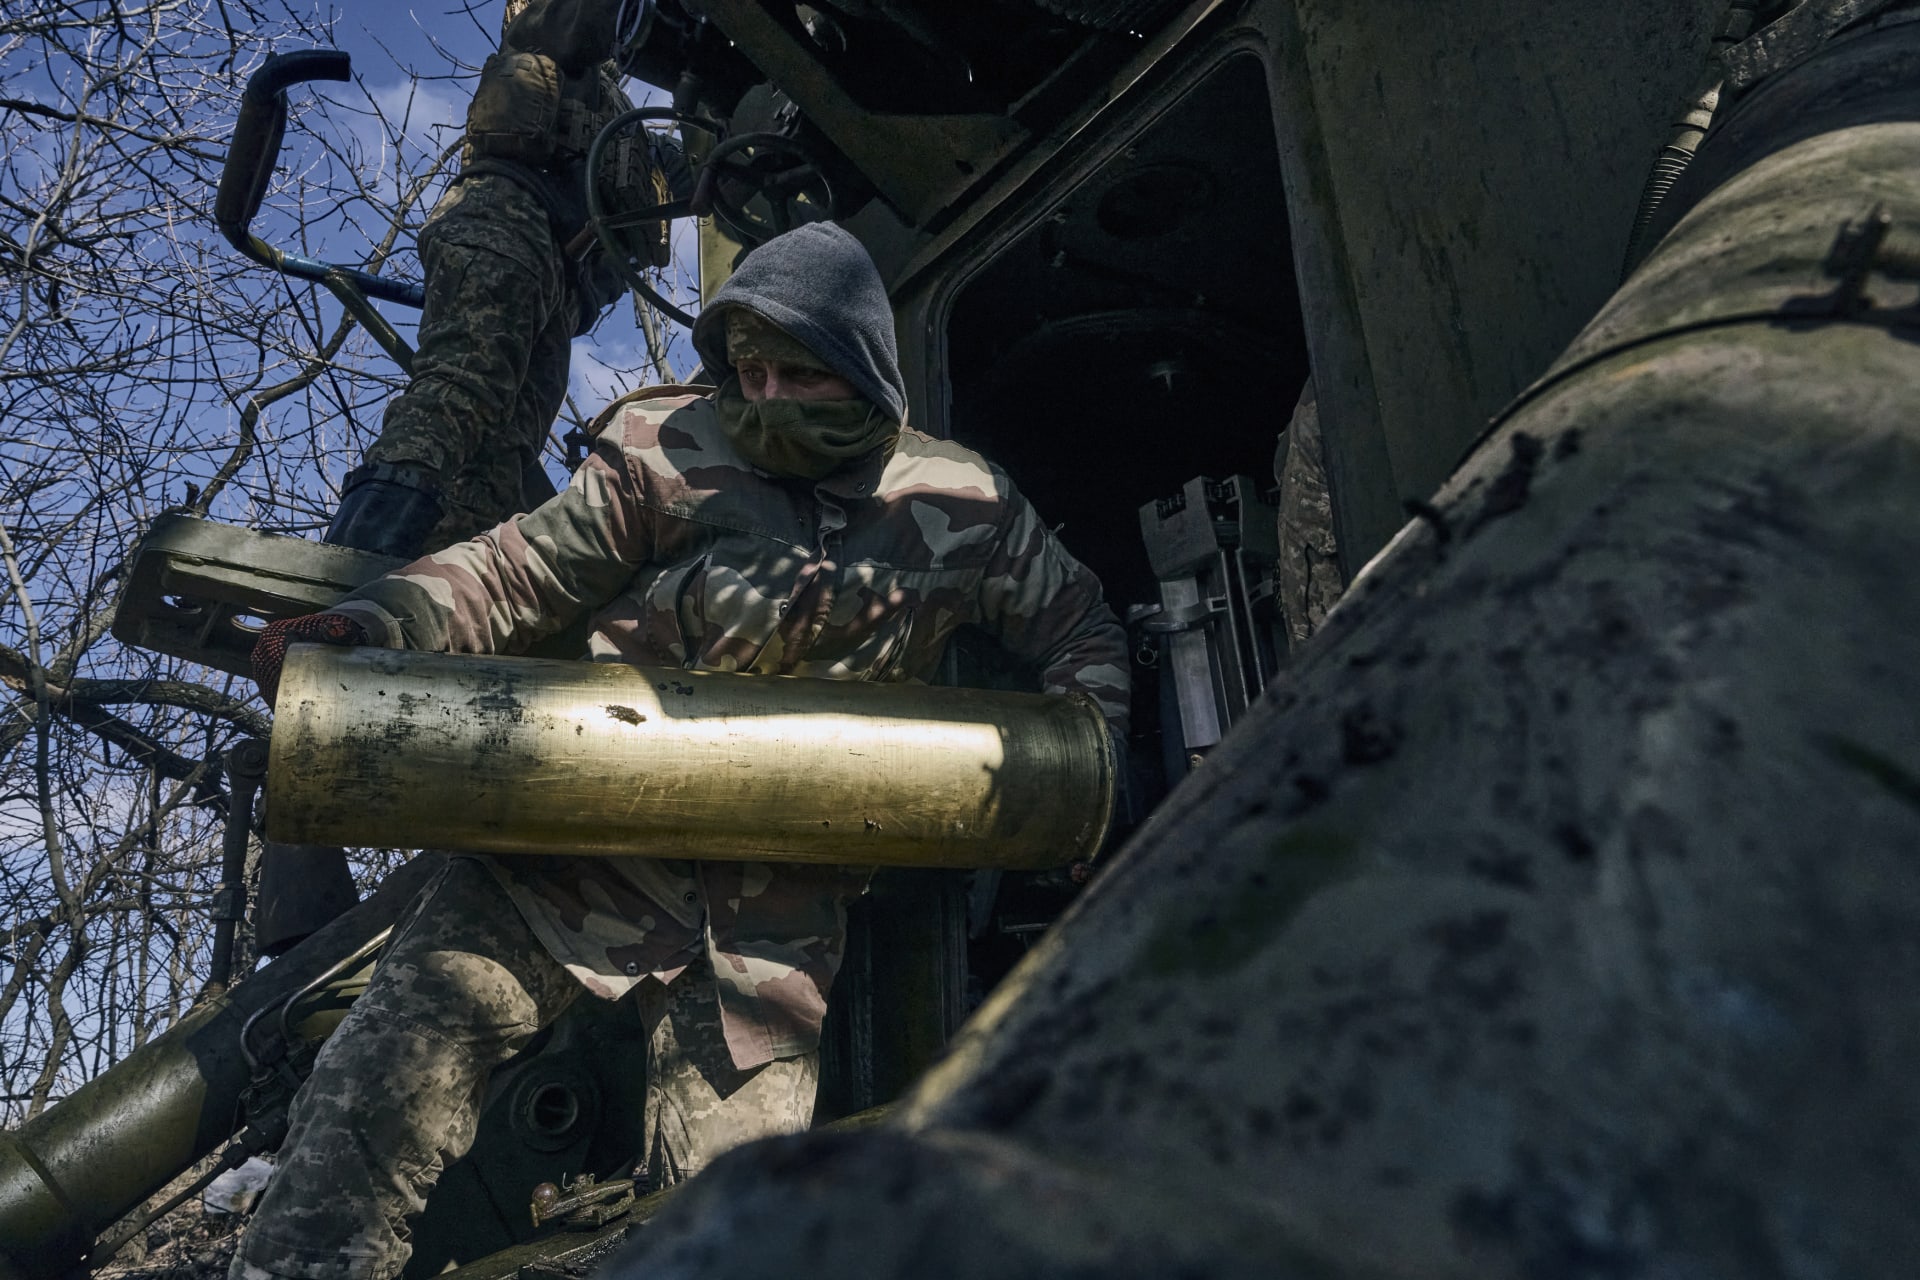 Ukrajinský voják nabíjí samohybnou houfnici nedaleko frontové linie u Bachmutu